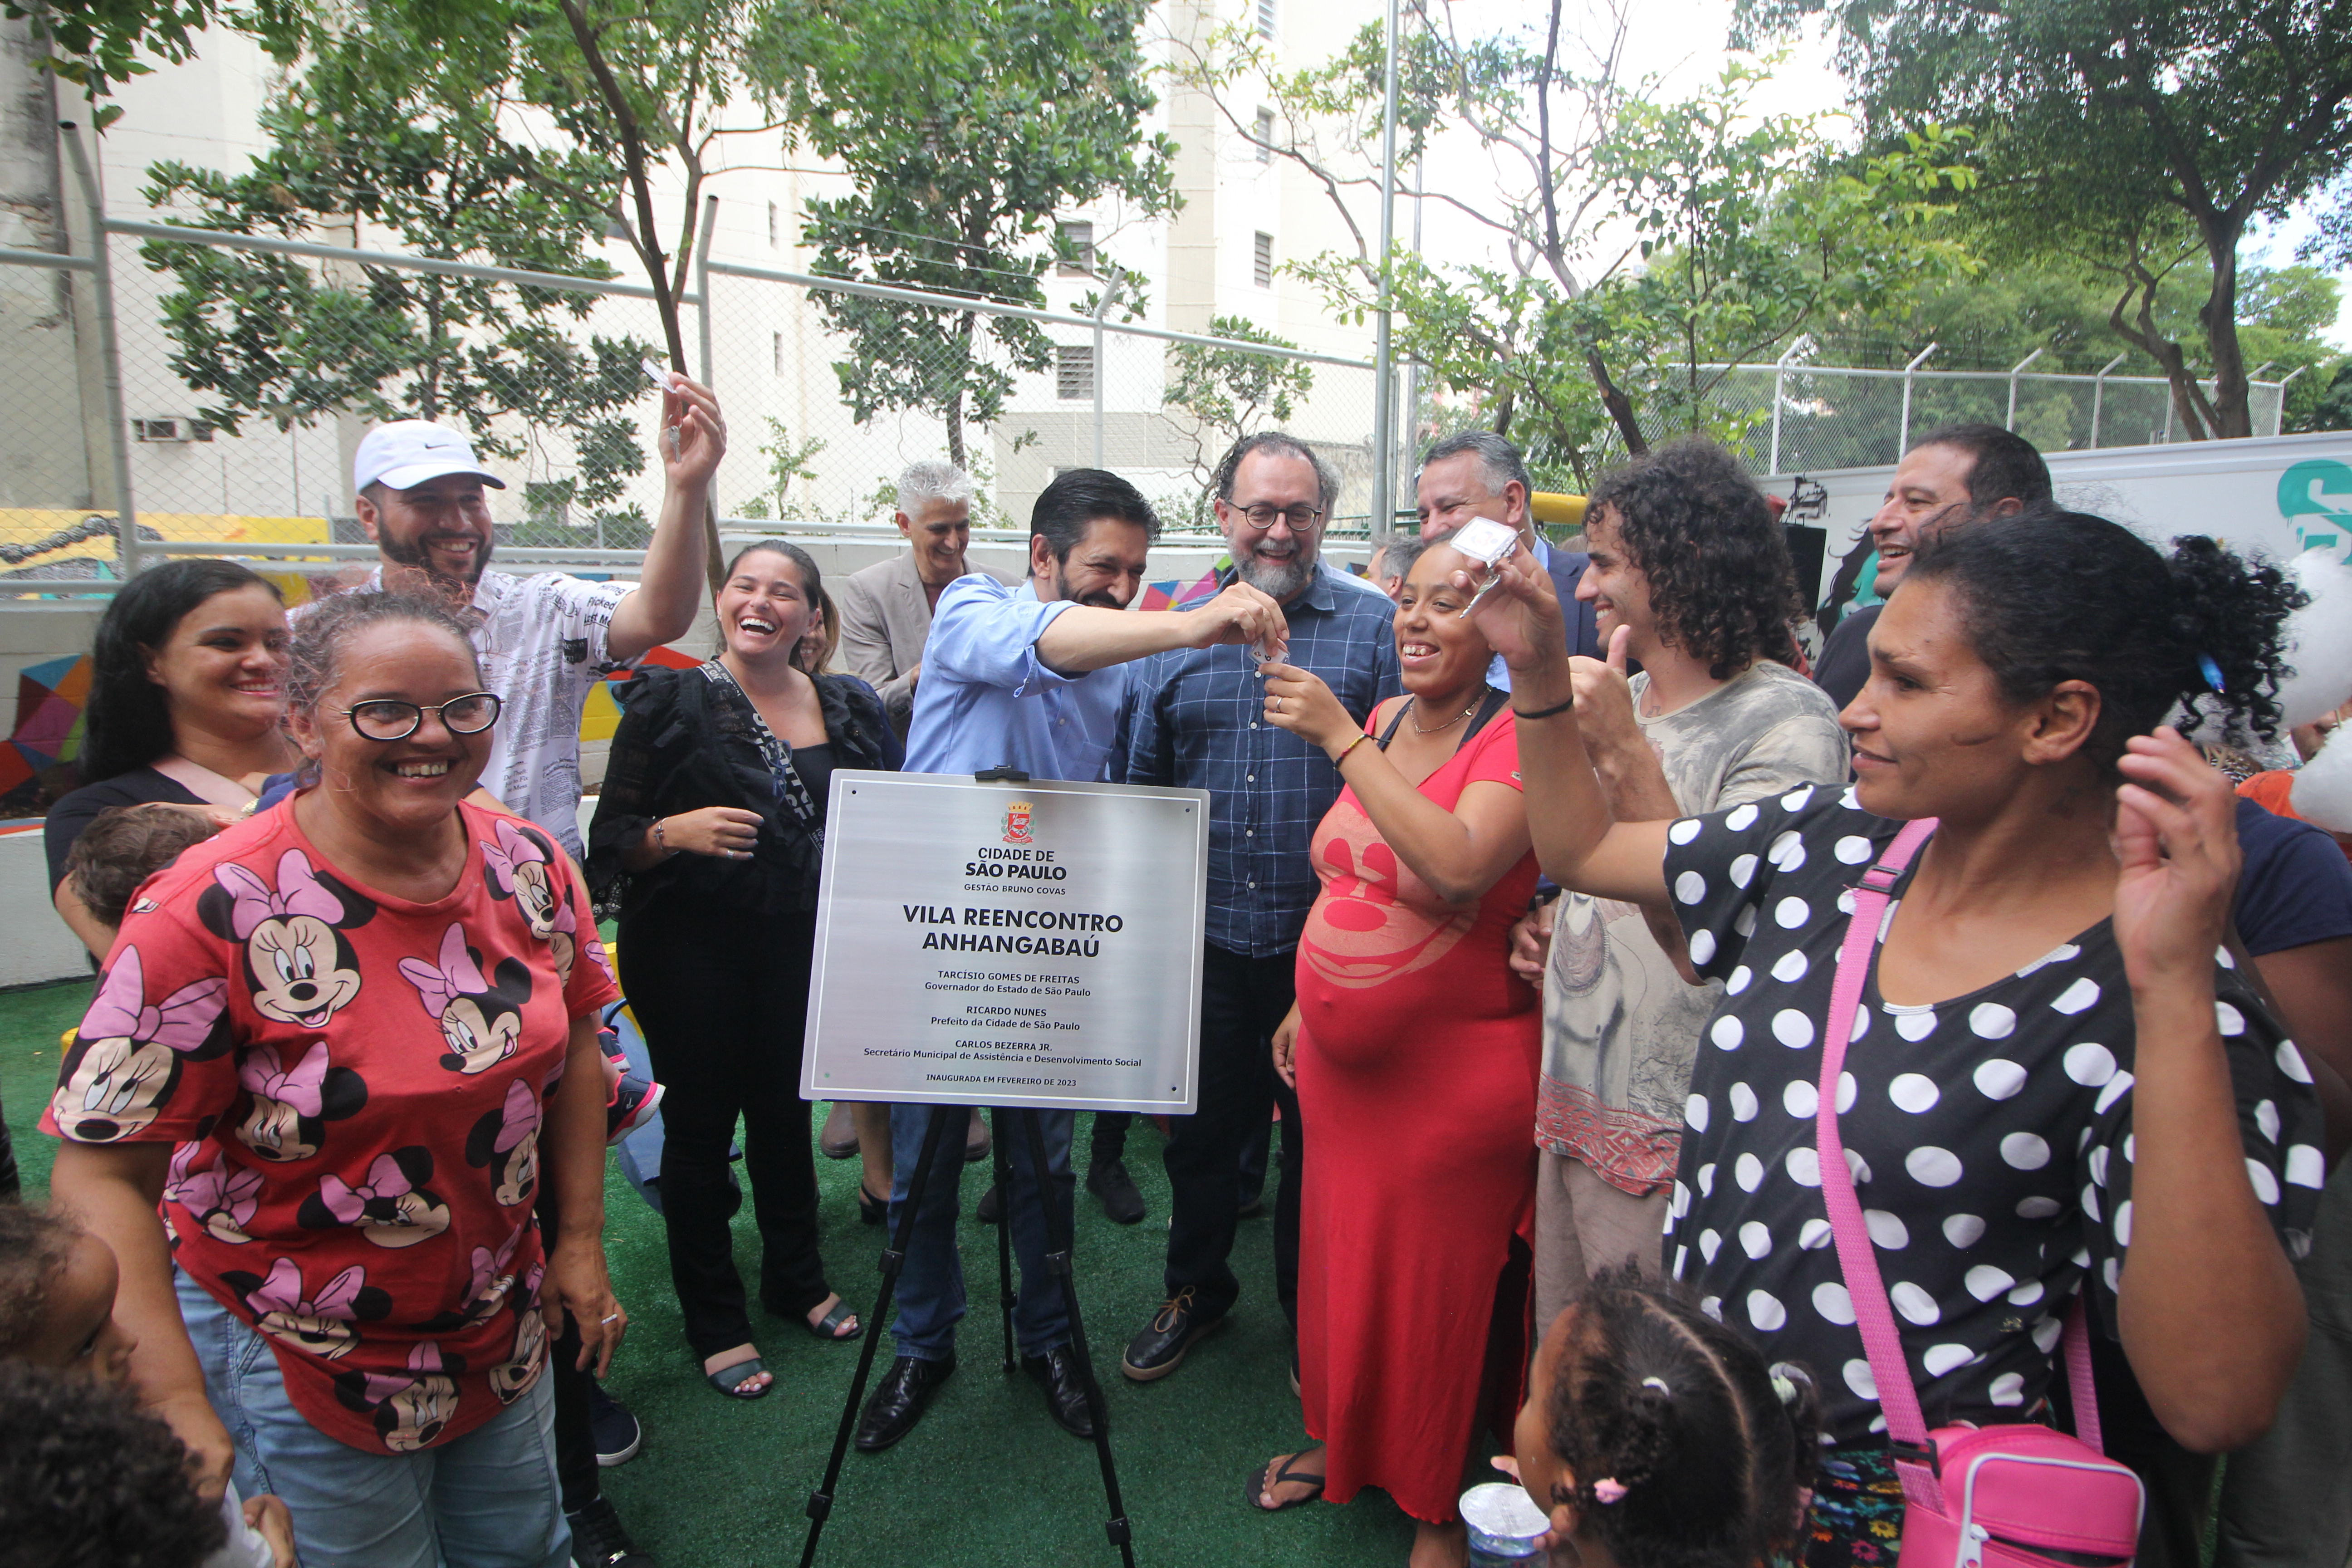 11 pessoas, entre elas o Prefeito Ricardo Nunes e o Secretário Carlos Bezerra Jr., com a placa do novo serviço Vila Reencontro 'Anhangabaú', entregando as chaves das casas às famílias.